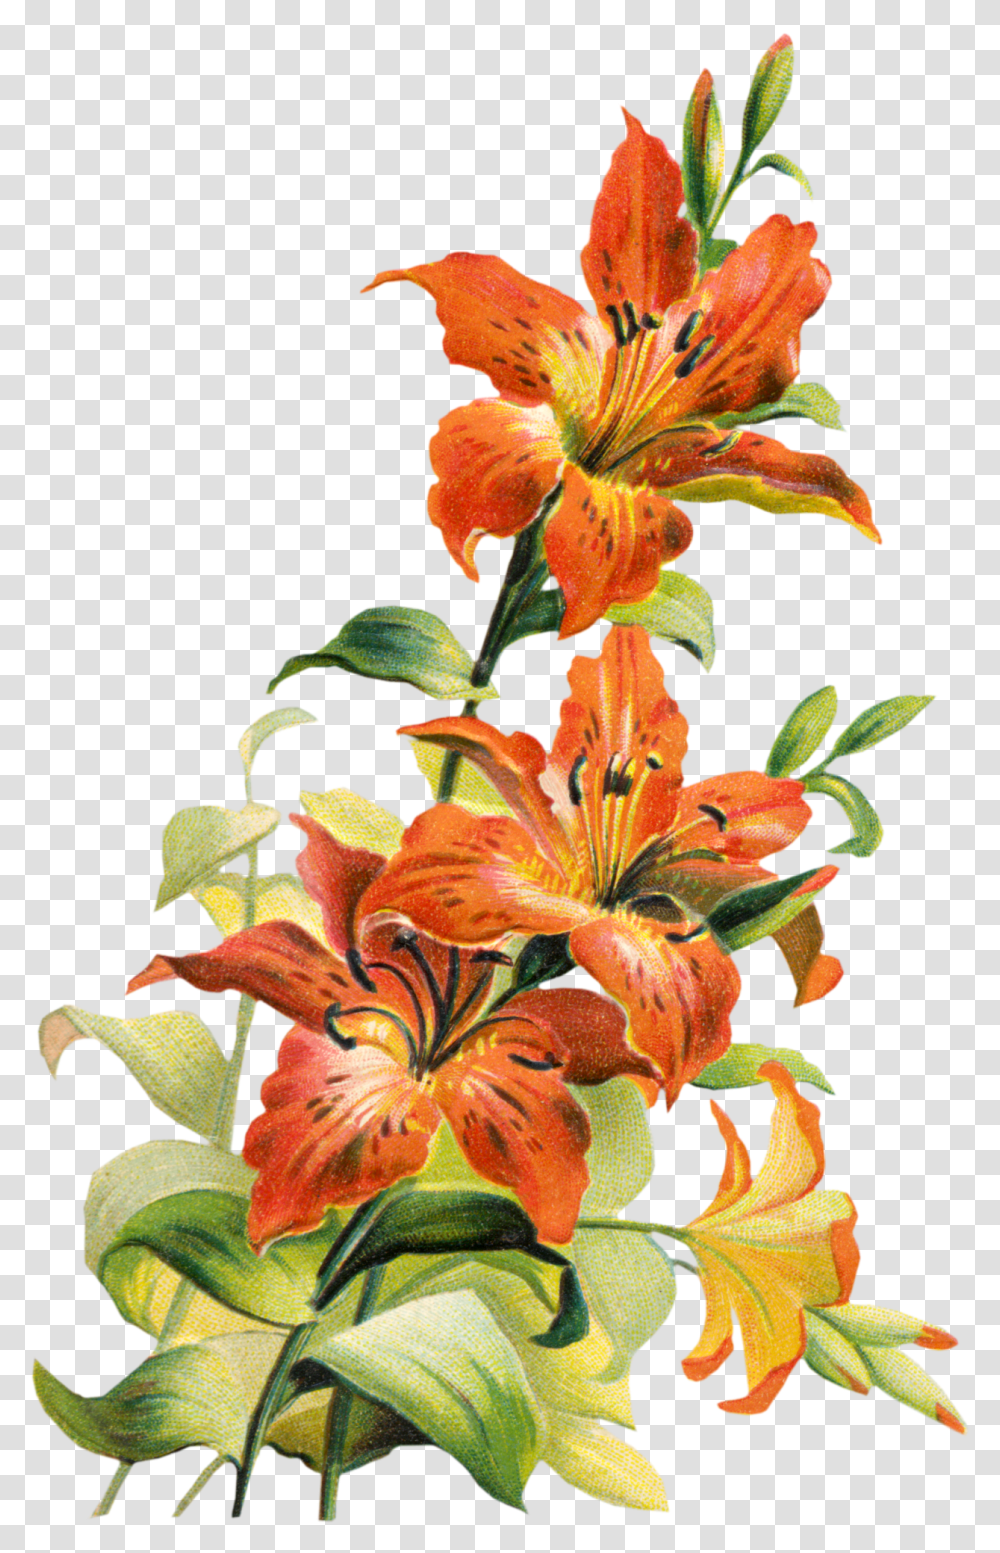 Image Flower Free Clip Art Images Zda Tiger Lily Flower Art, Plant, Blossom, Amaryllis, Pollen Transparent Png